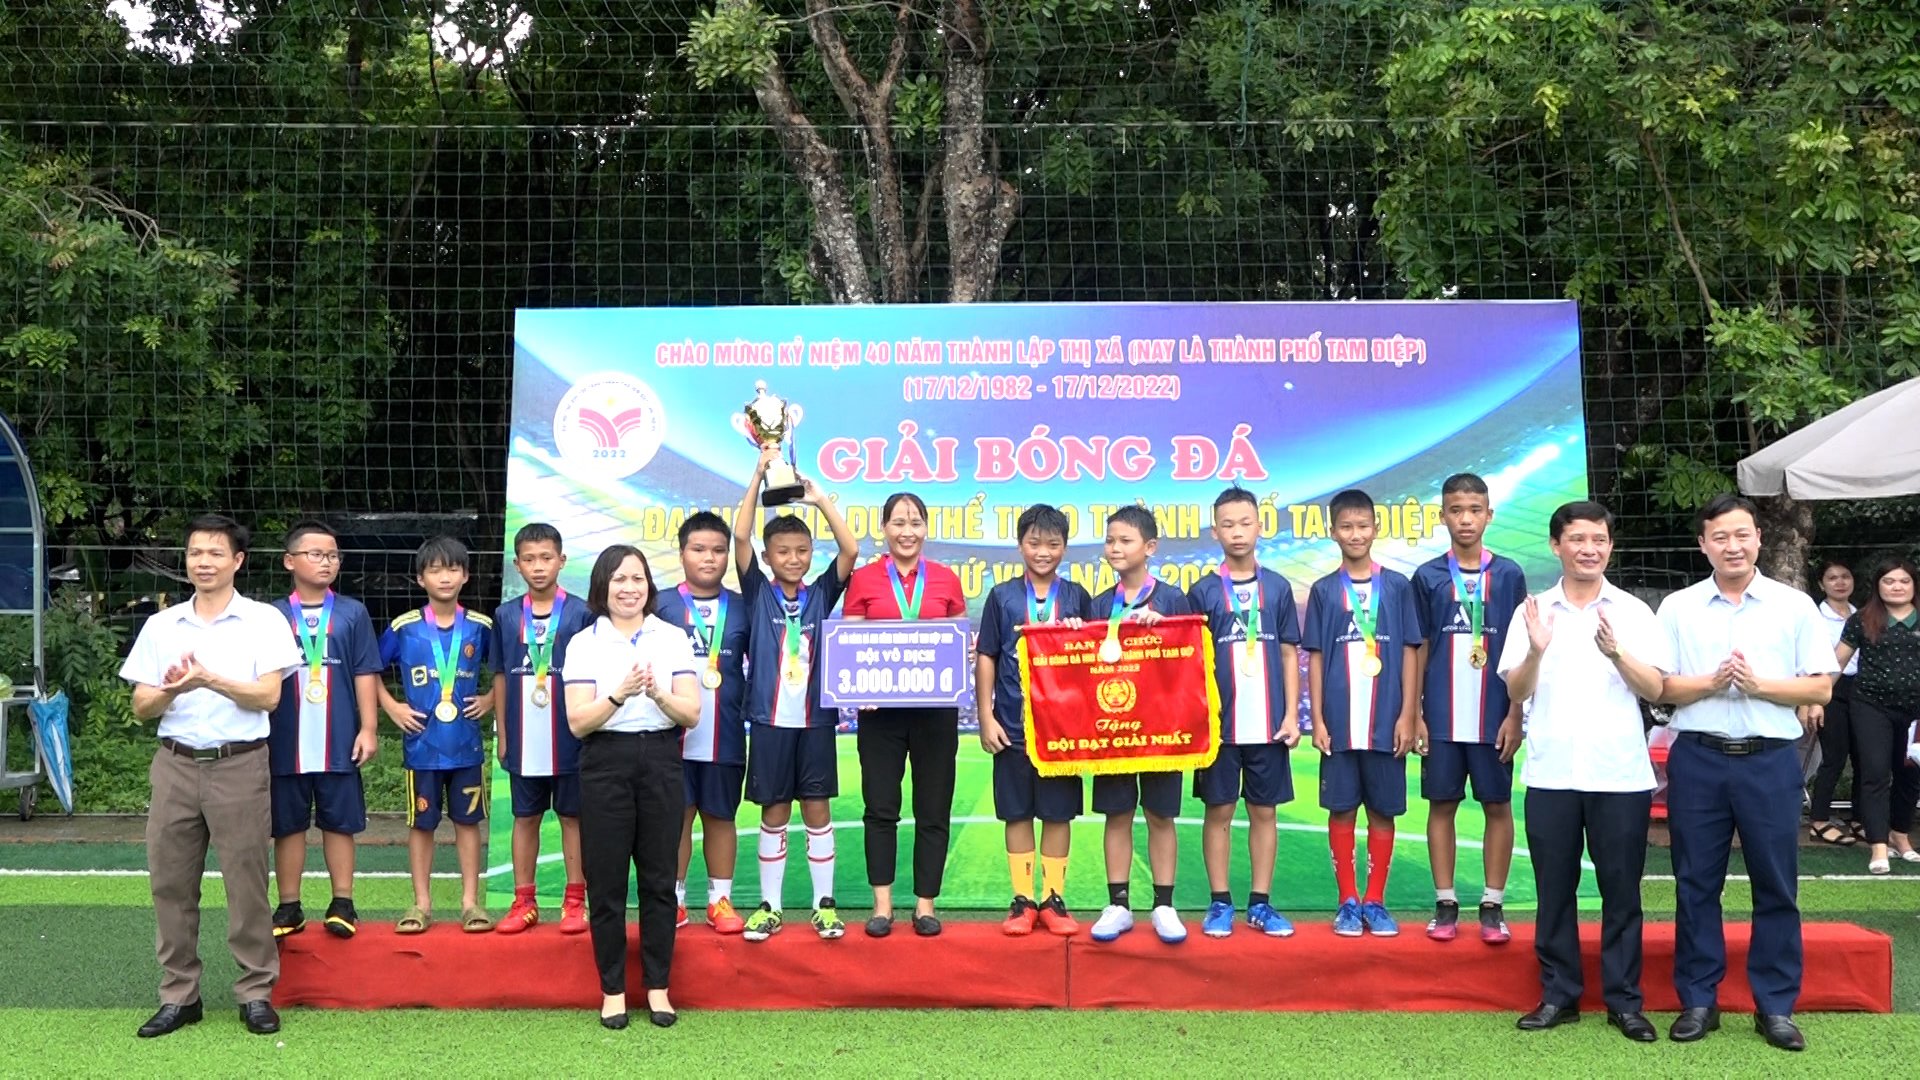 Lễ trao giải bóng đá nhi đồng trong khuôn khổ các môn thi đấu Đại hội TDTT thành phố lần thứ VII-năm 2022